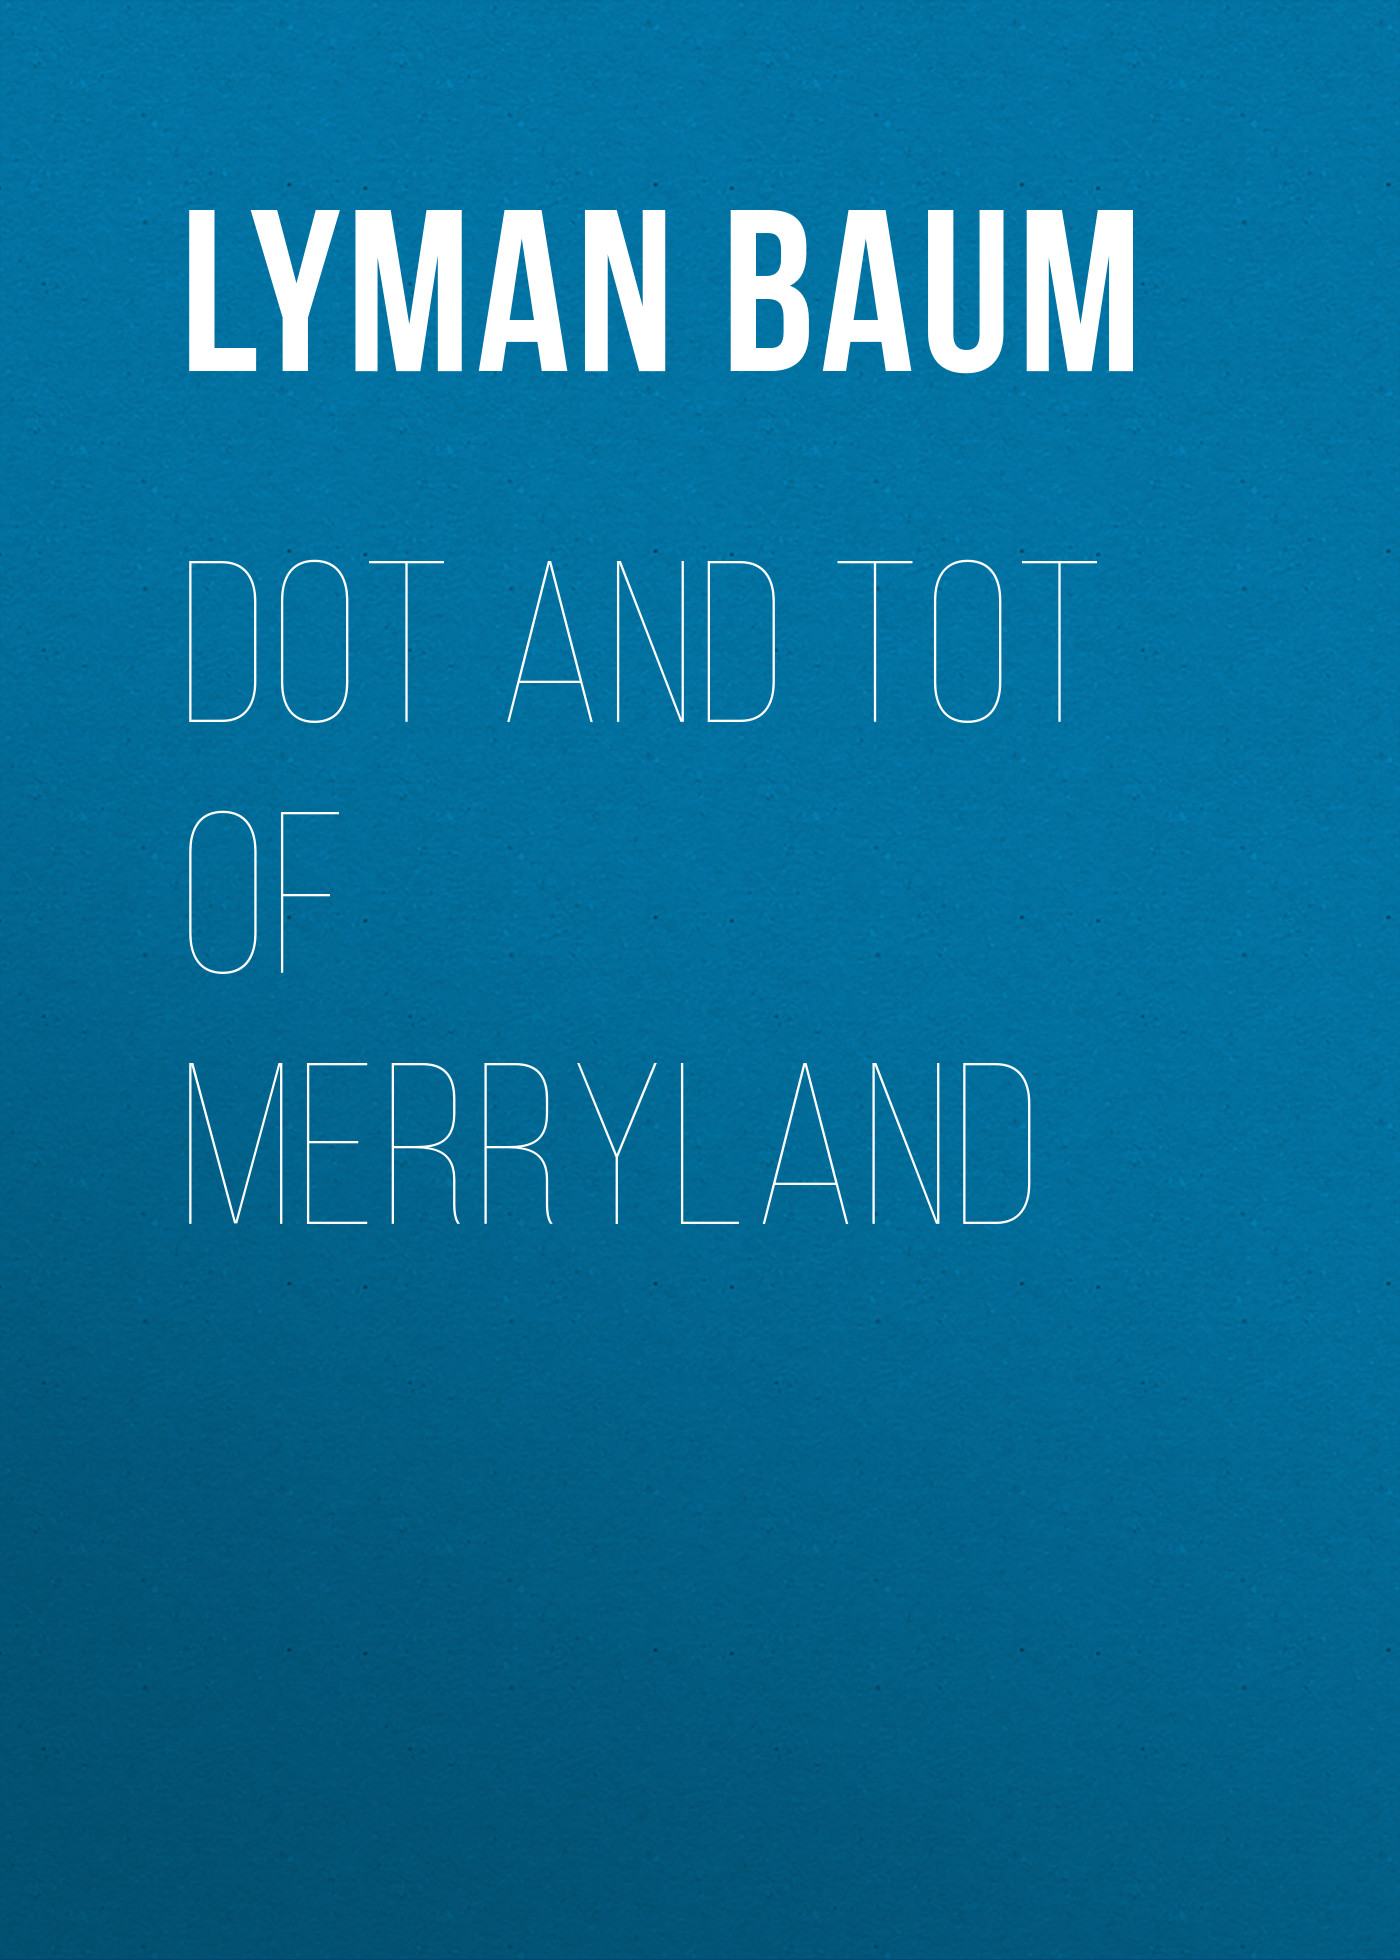 Книга Dot and Tot of Merryland из серии , созданная Lyman Baum, может относится к жанру Зарубежная классика. Стоимость электронной книги Dot and Tot of Merryland с идентификатором 23148611 составляет 5.99 руб.